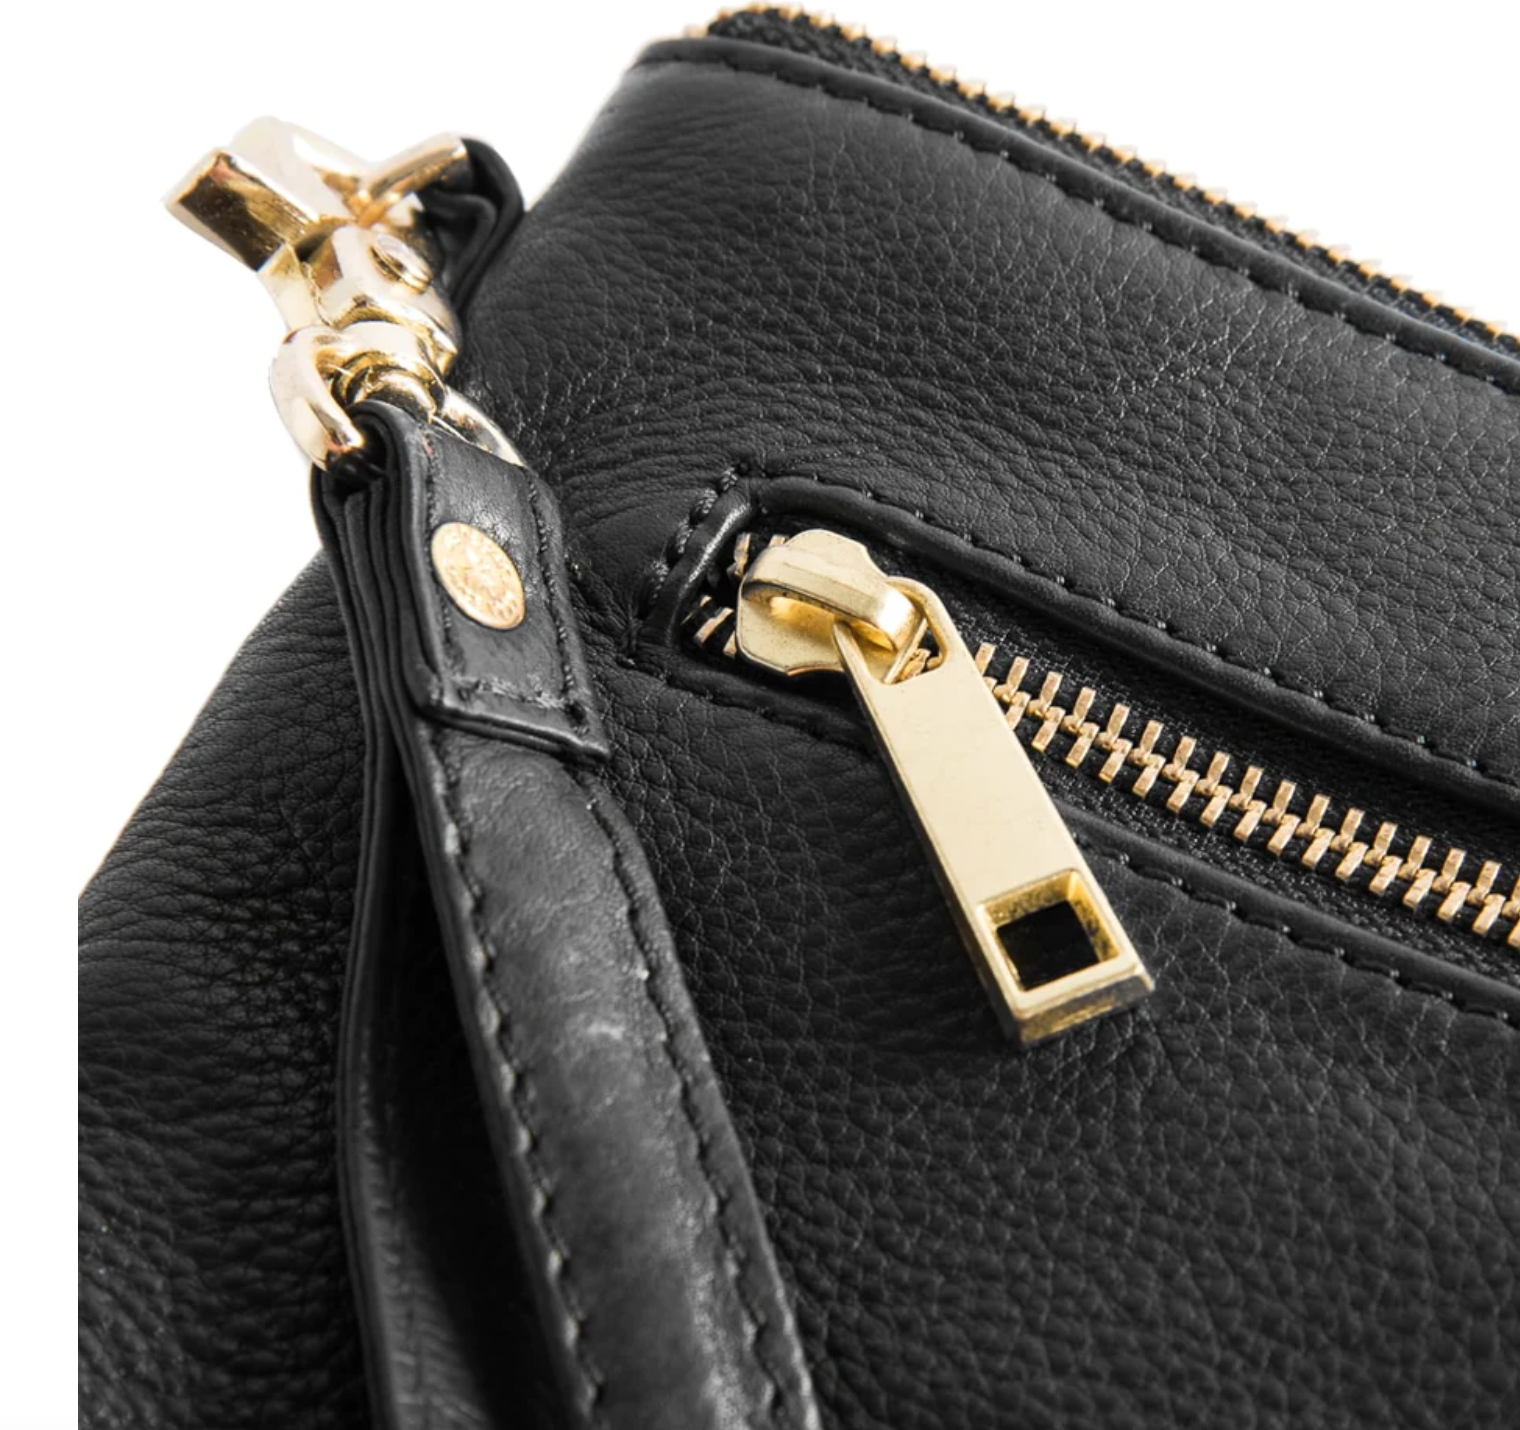 Depeche Small Bag – Saretta Boutique 1